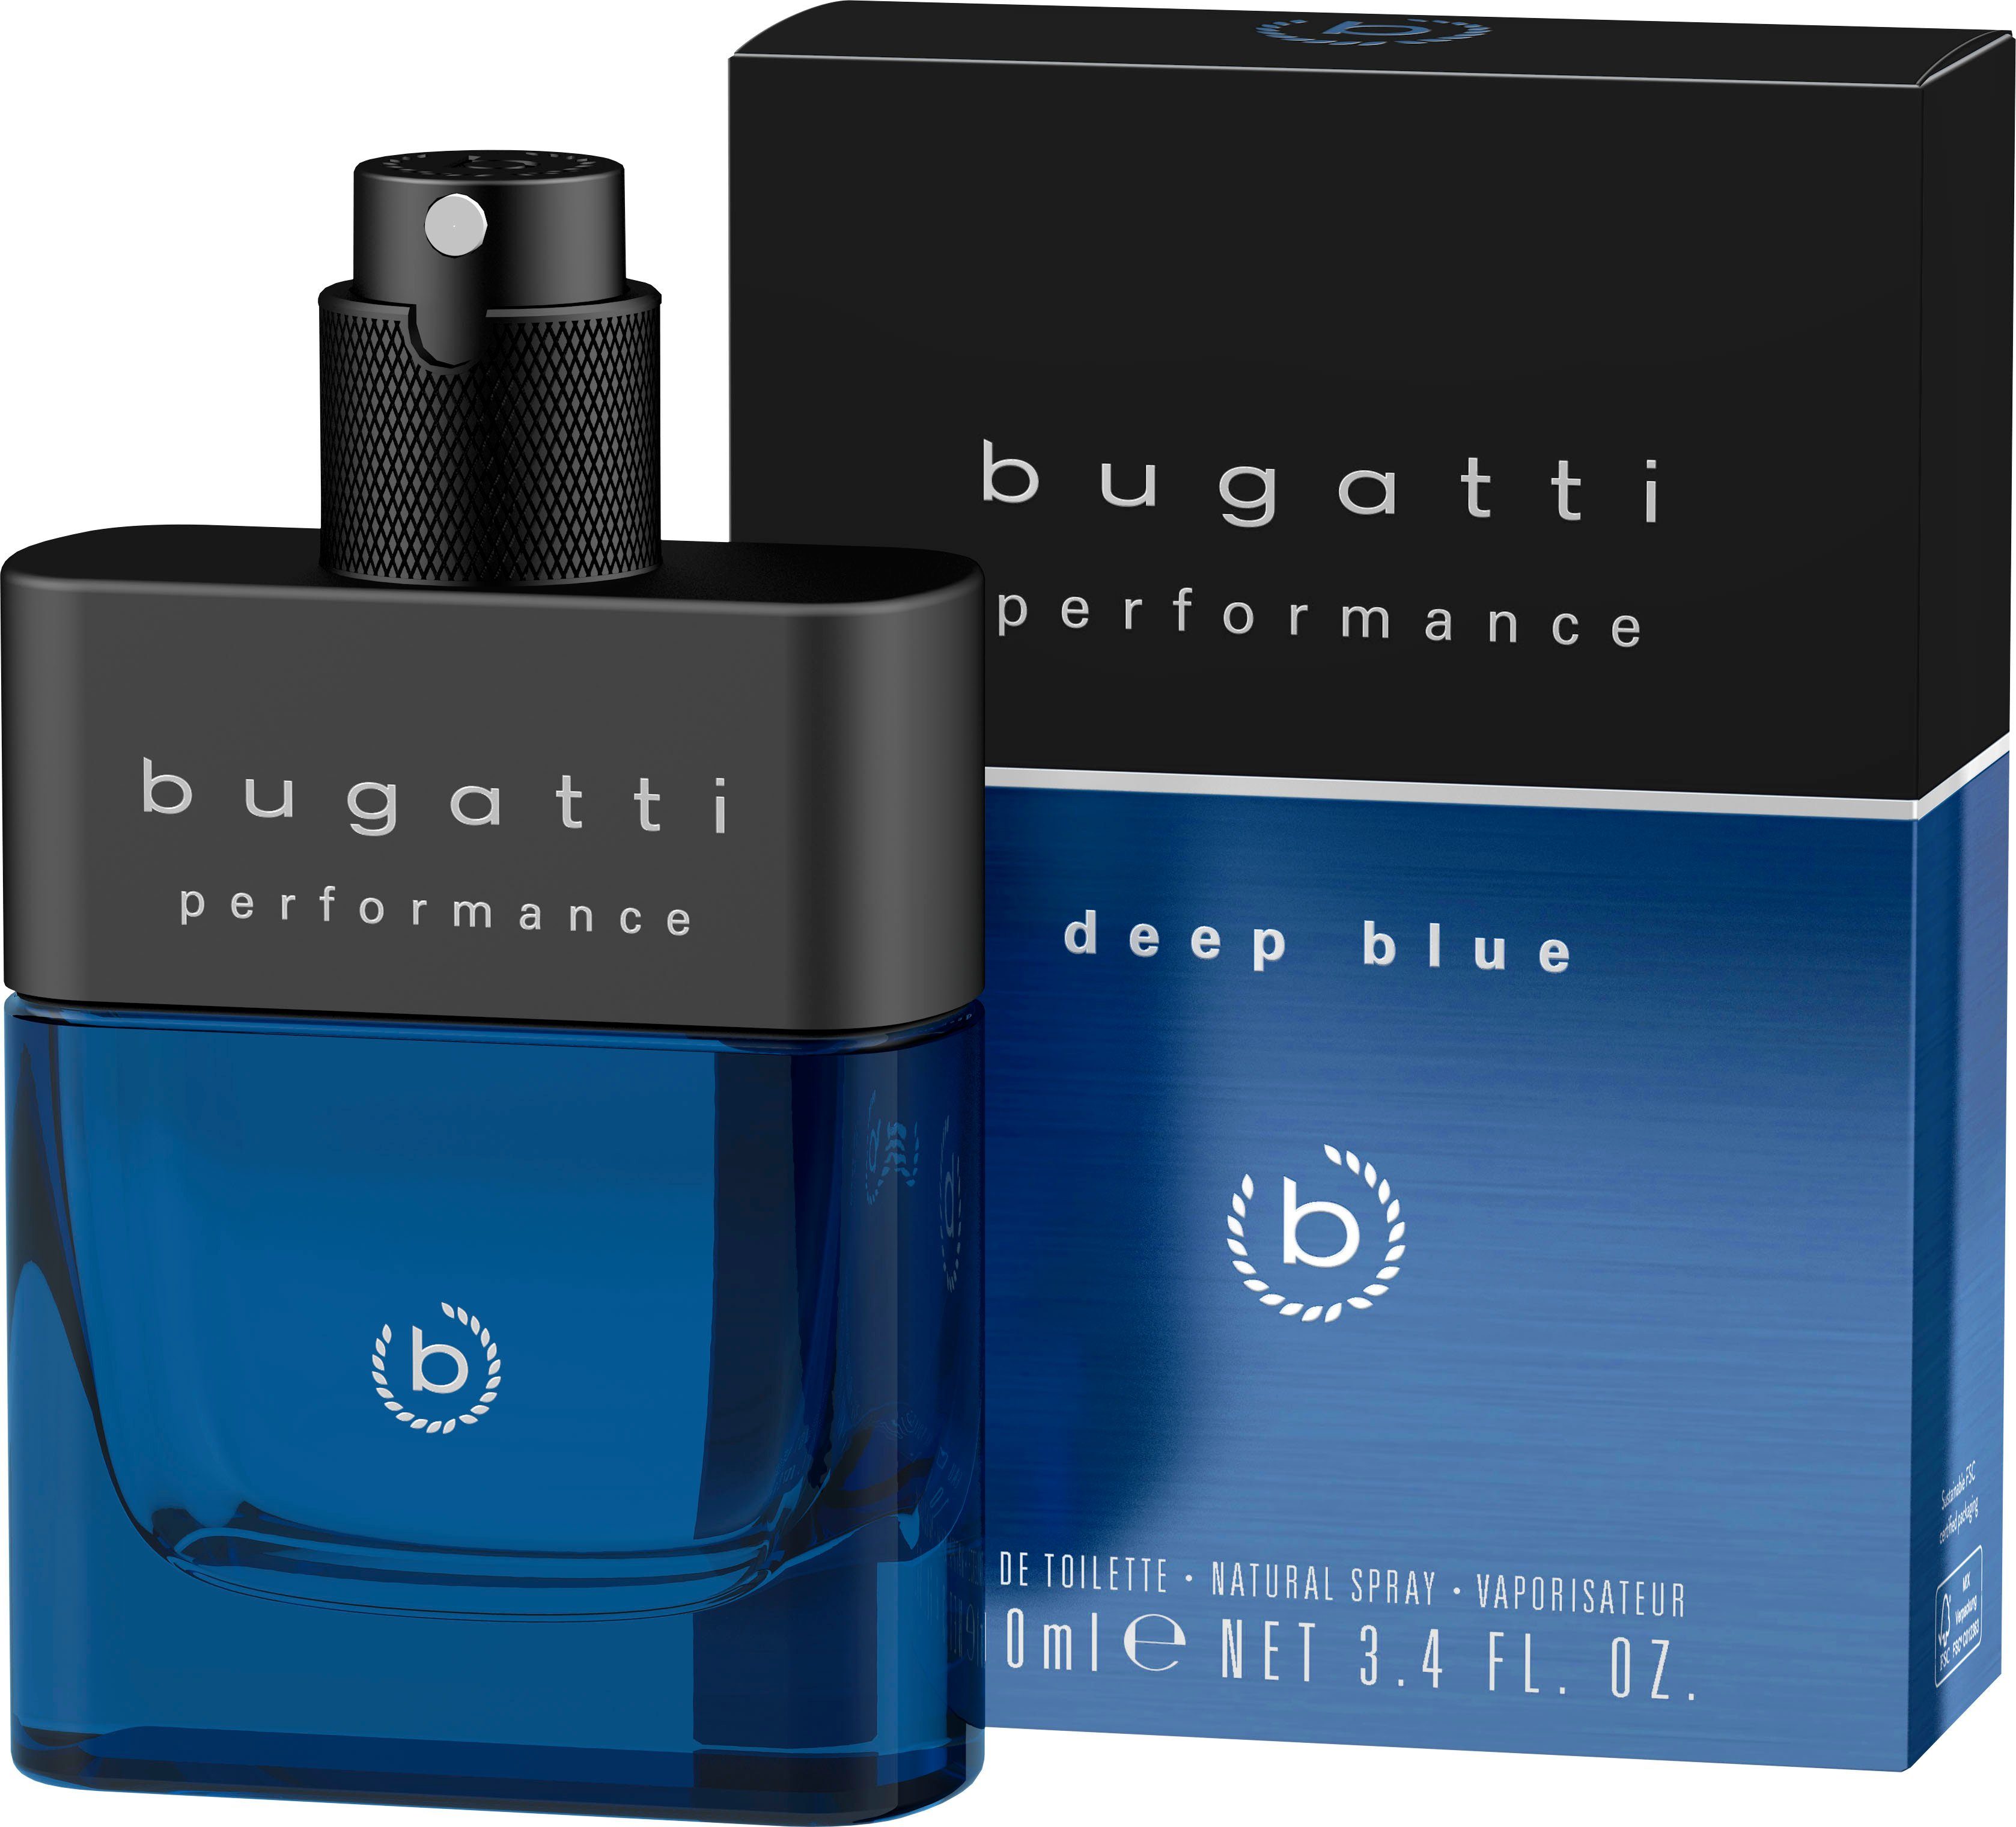 Bugatti Eau de Toilette online | OTTO kaufen